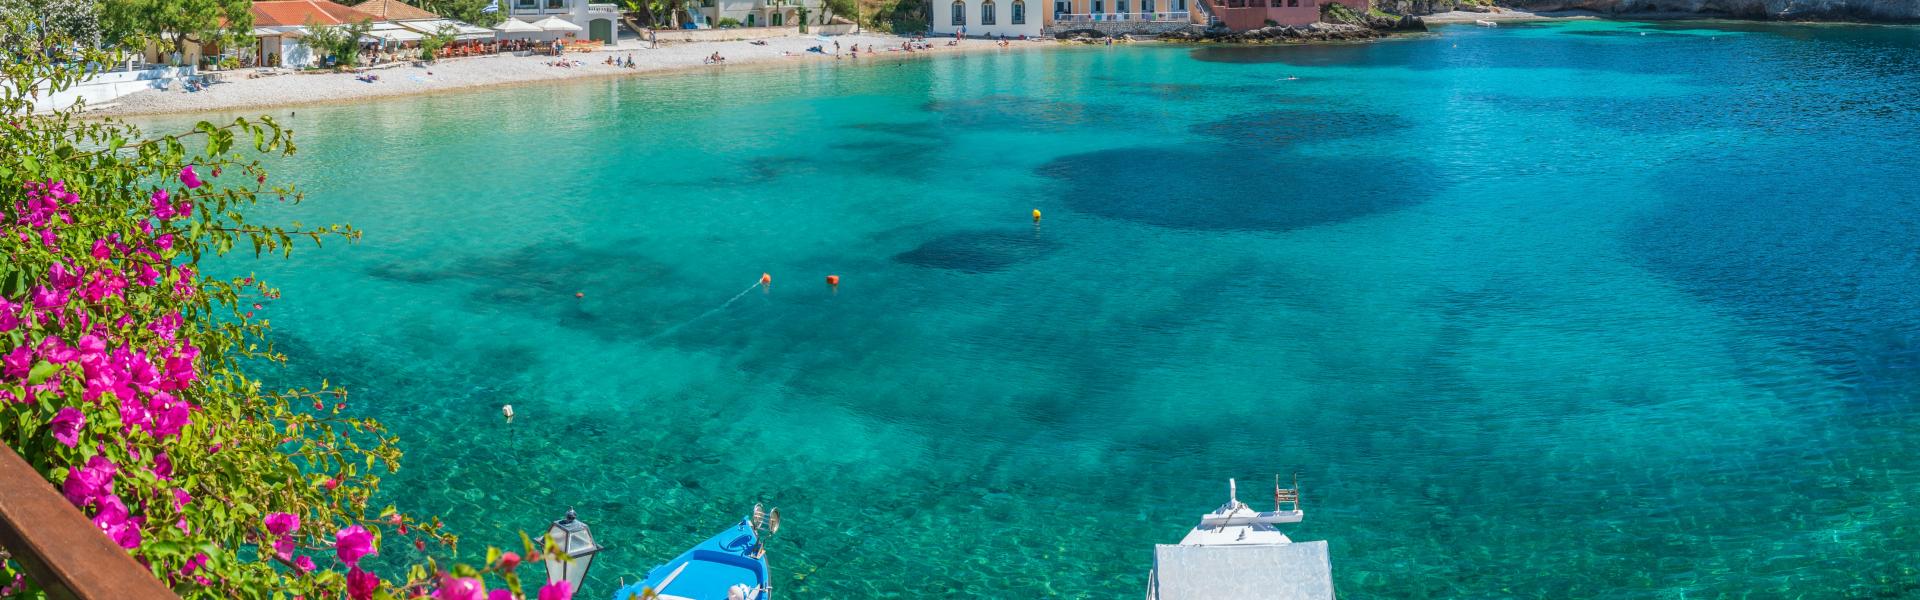 Ferienwohnungen & Ferienhäuser für Urlaub auf Ikaria - Casamundo